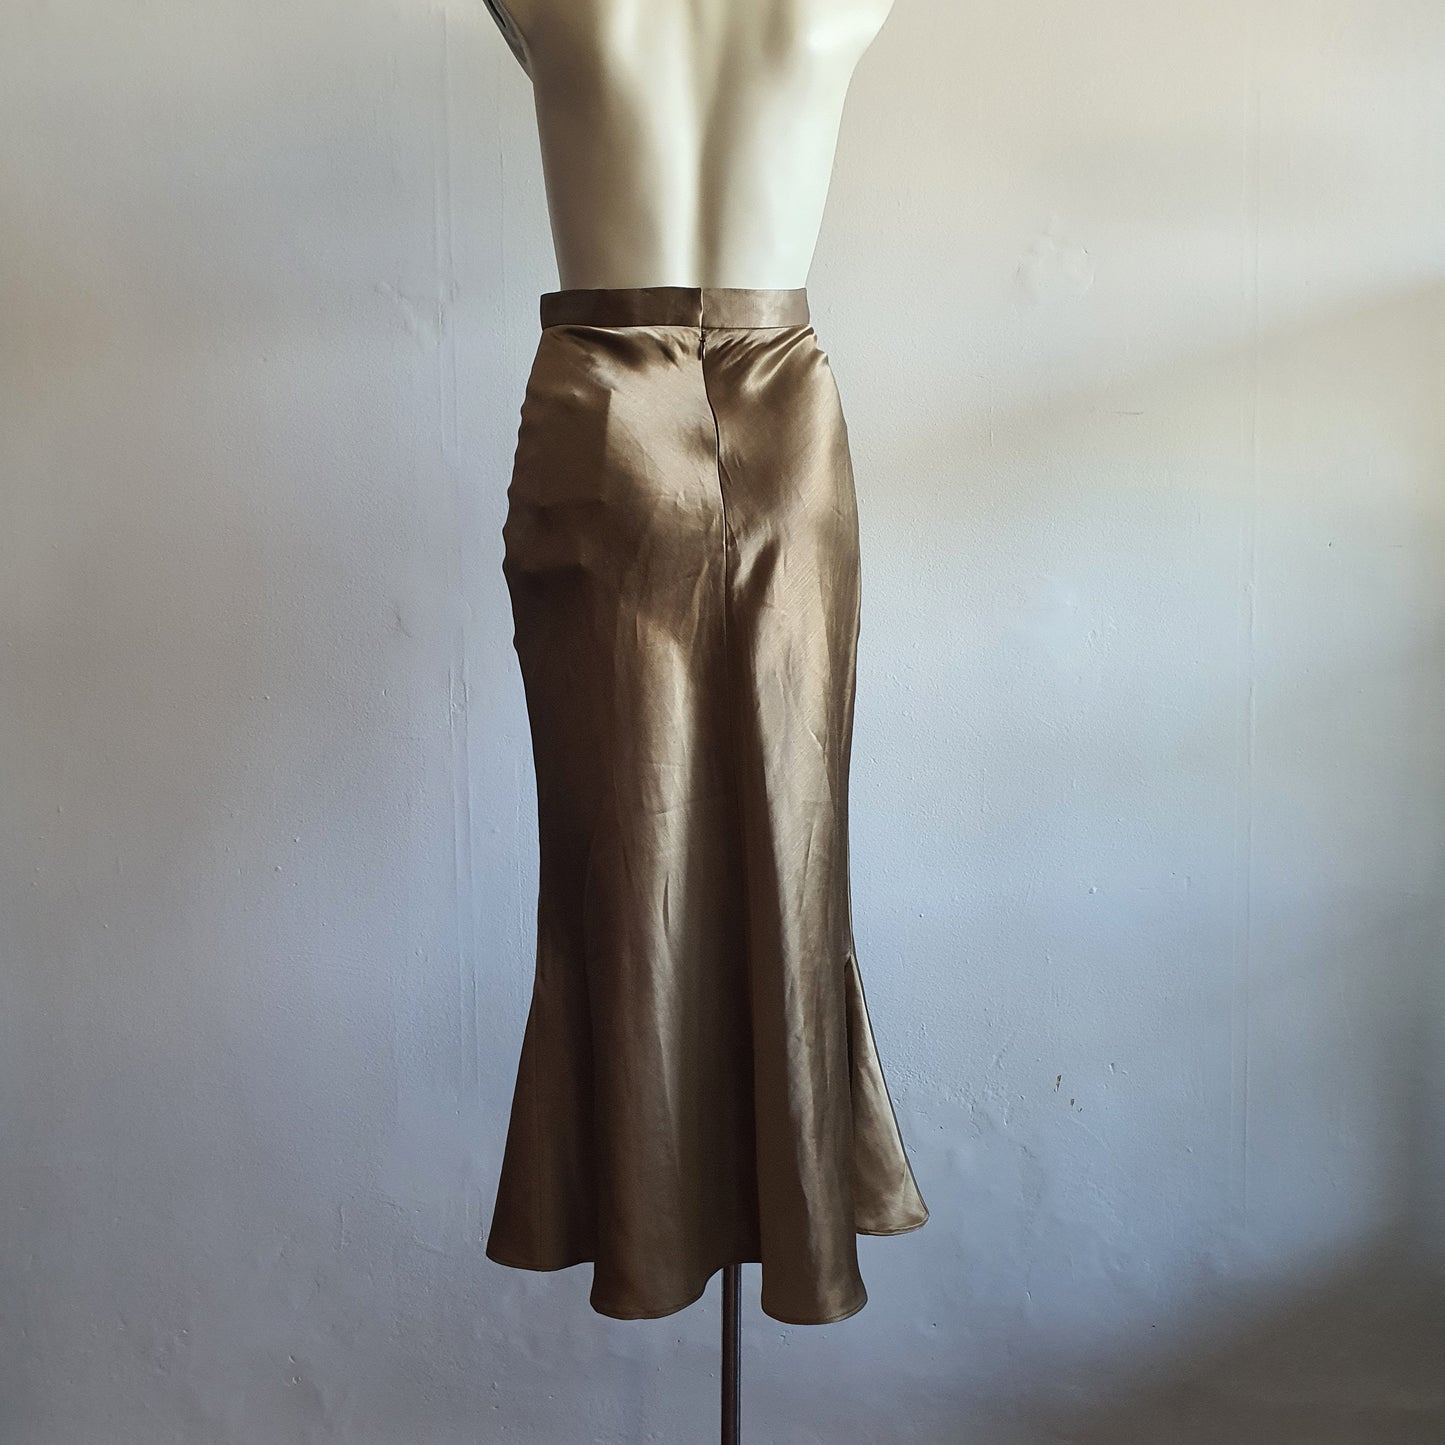 Christopher Esber Gold Bias Skirt (8)